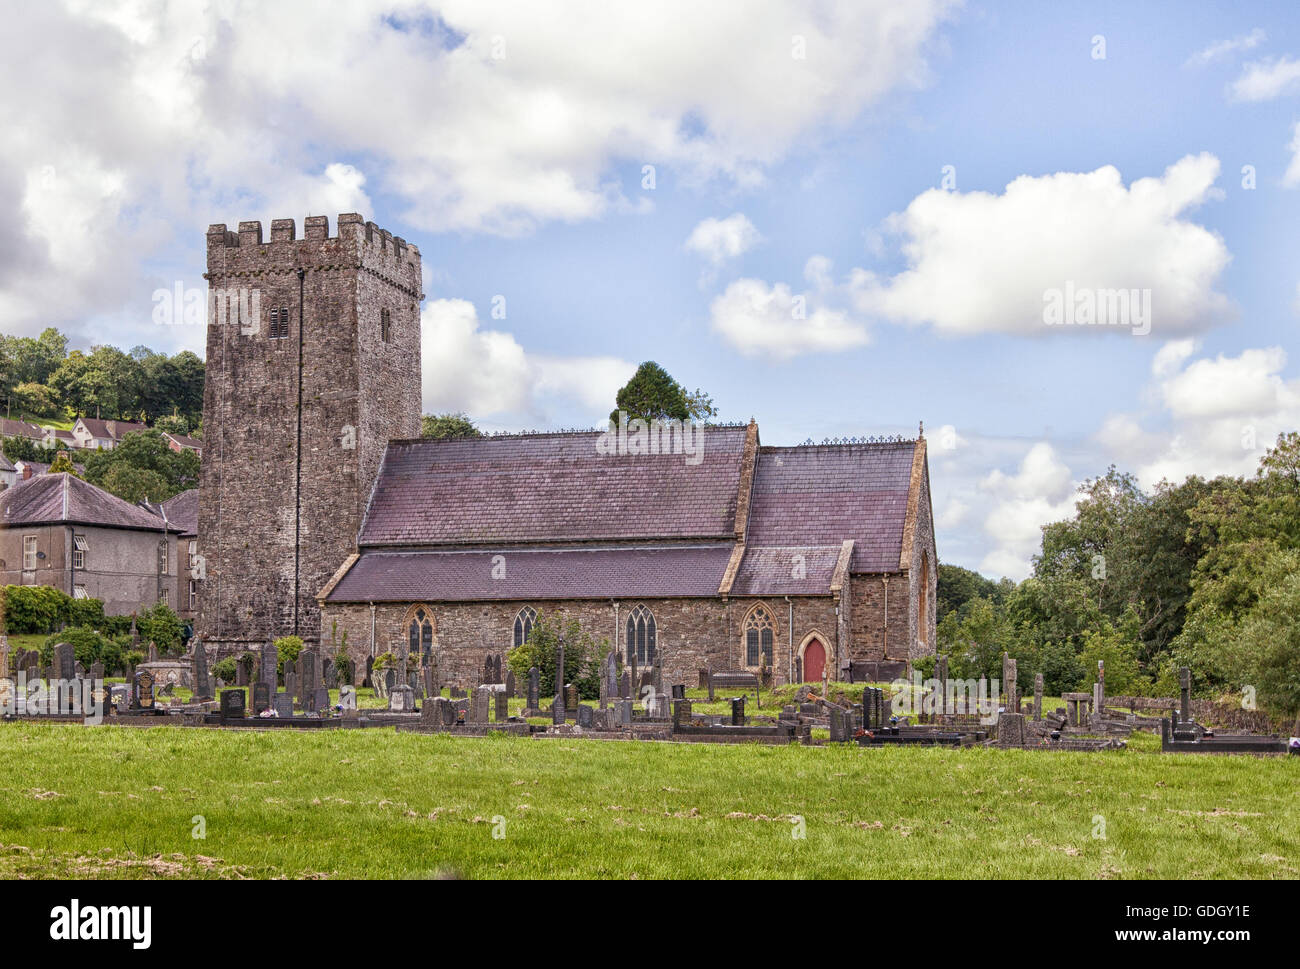 St. Tysul Kirche in Llandysul, Ceredigion, Wales. Einem schönen alten Gebäude einen Ort der Anbetung. Stockfoto